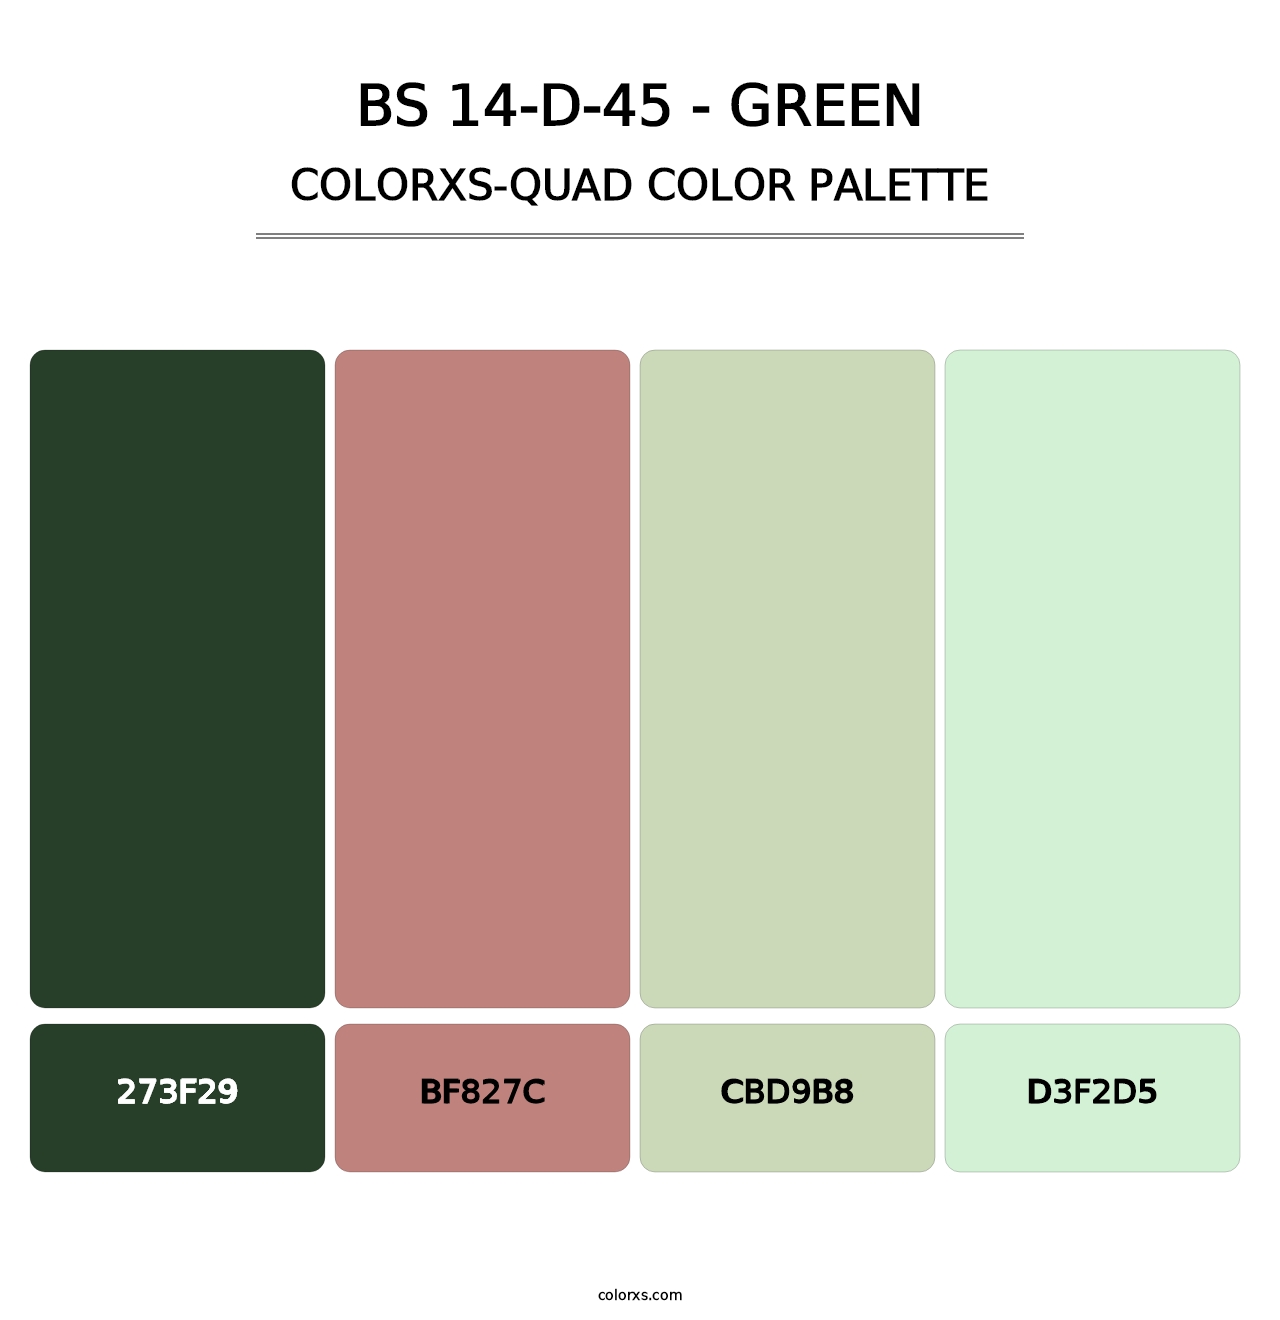 BS 14-D-45 - Green - Colorxs Quad Palette